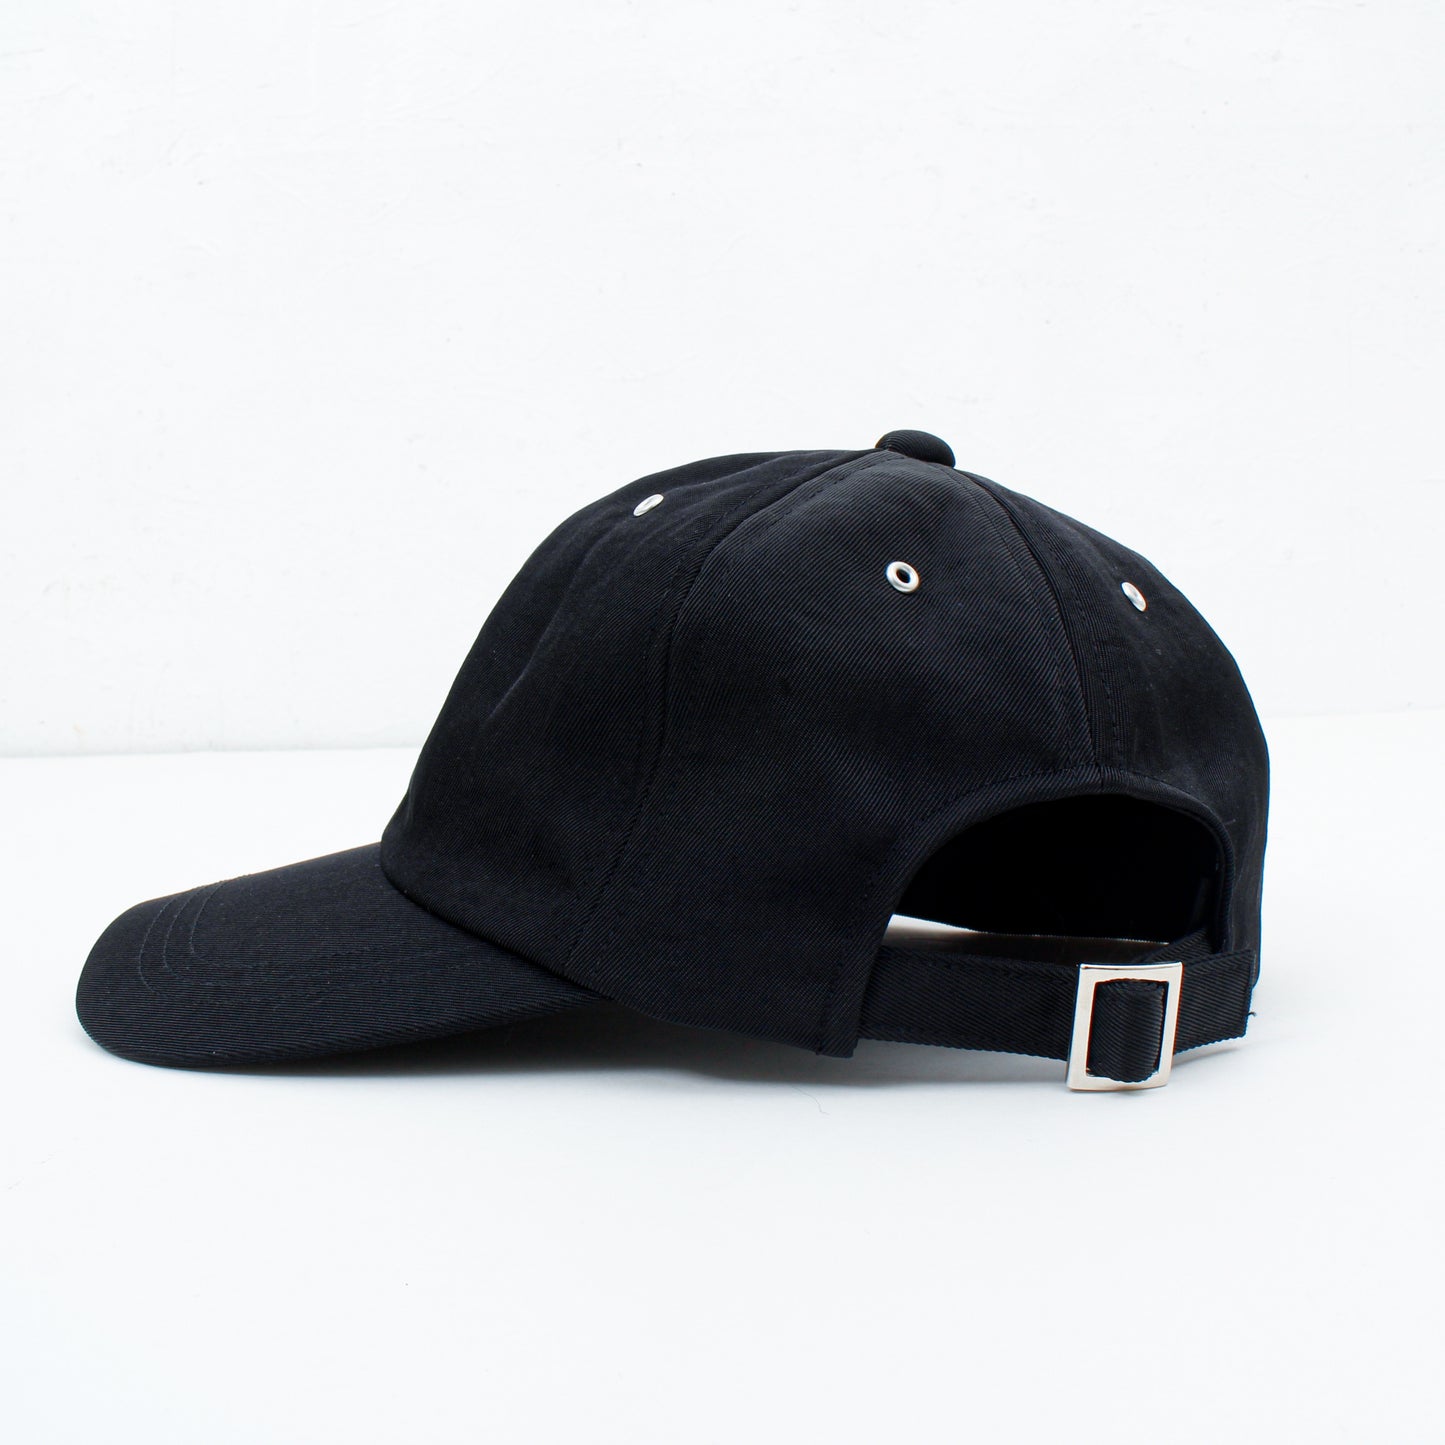 ACCIDENT CAP / black